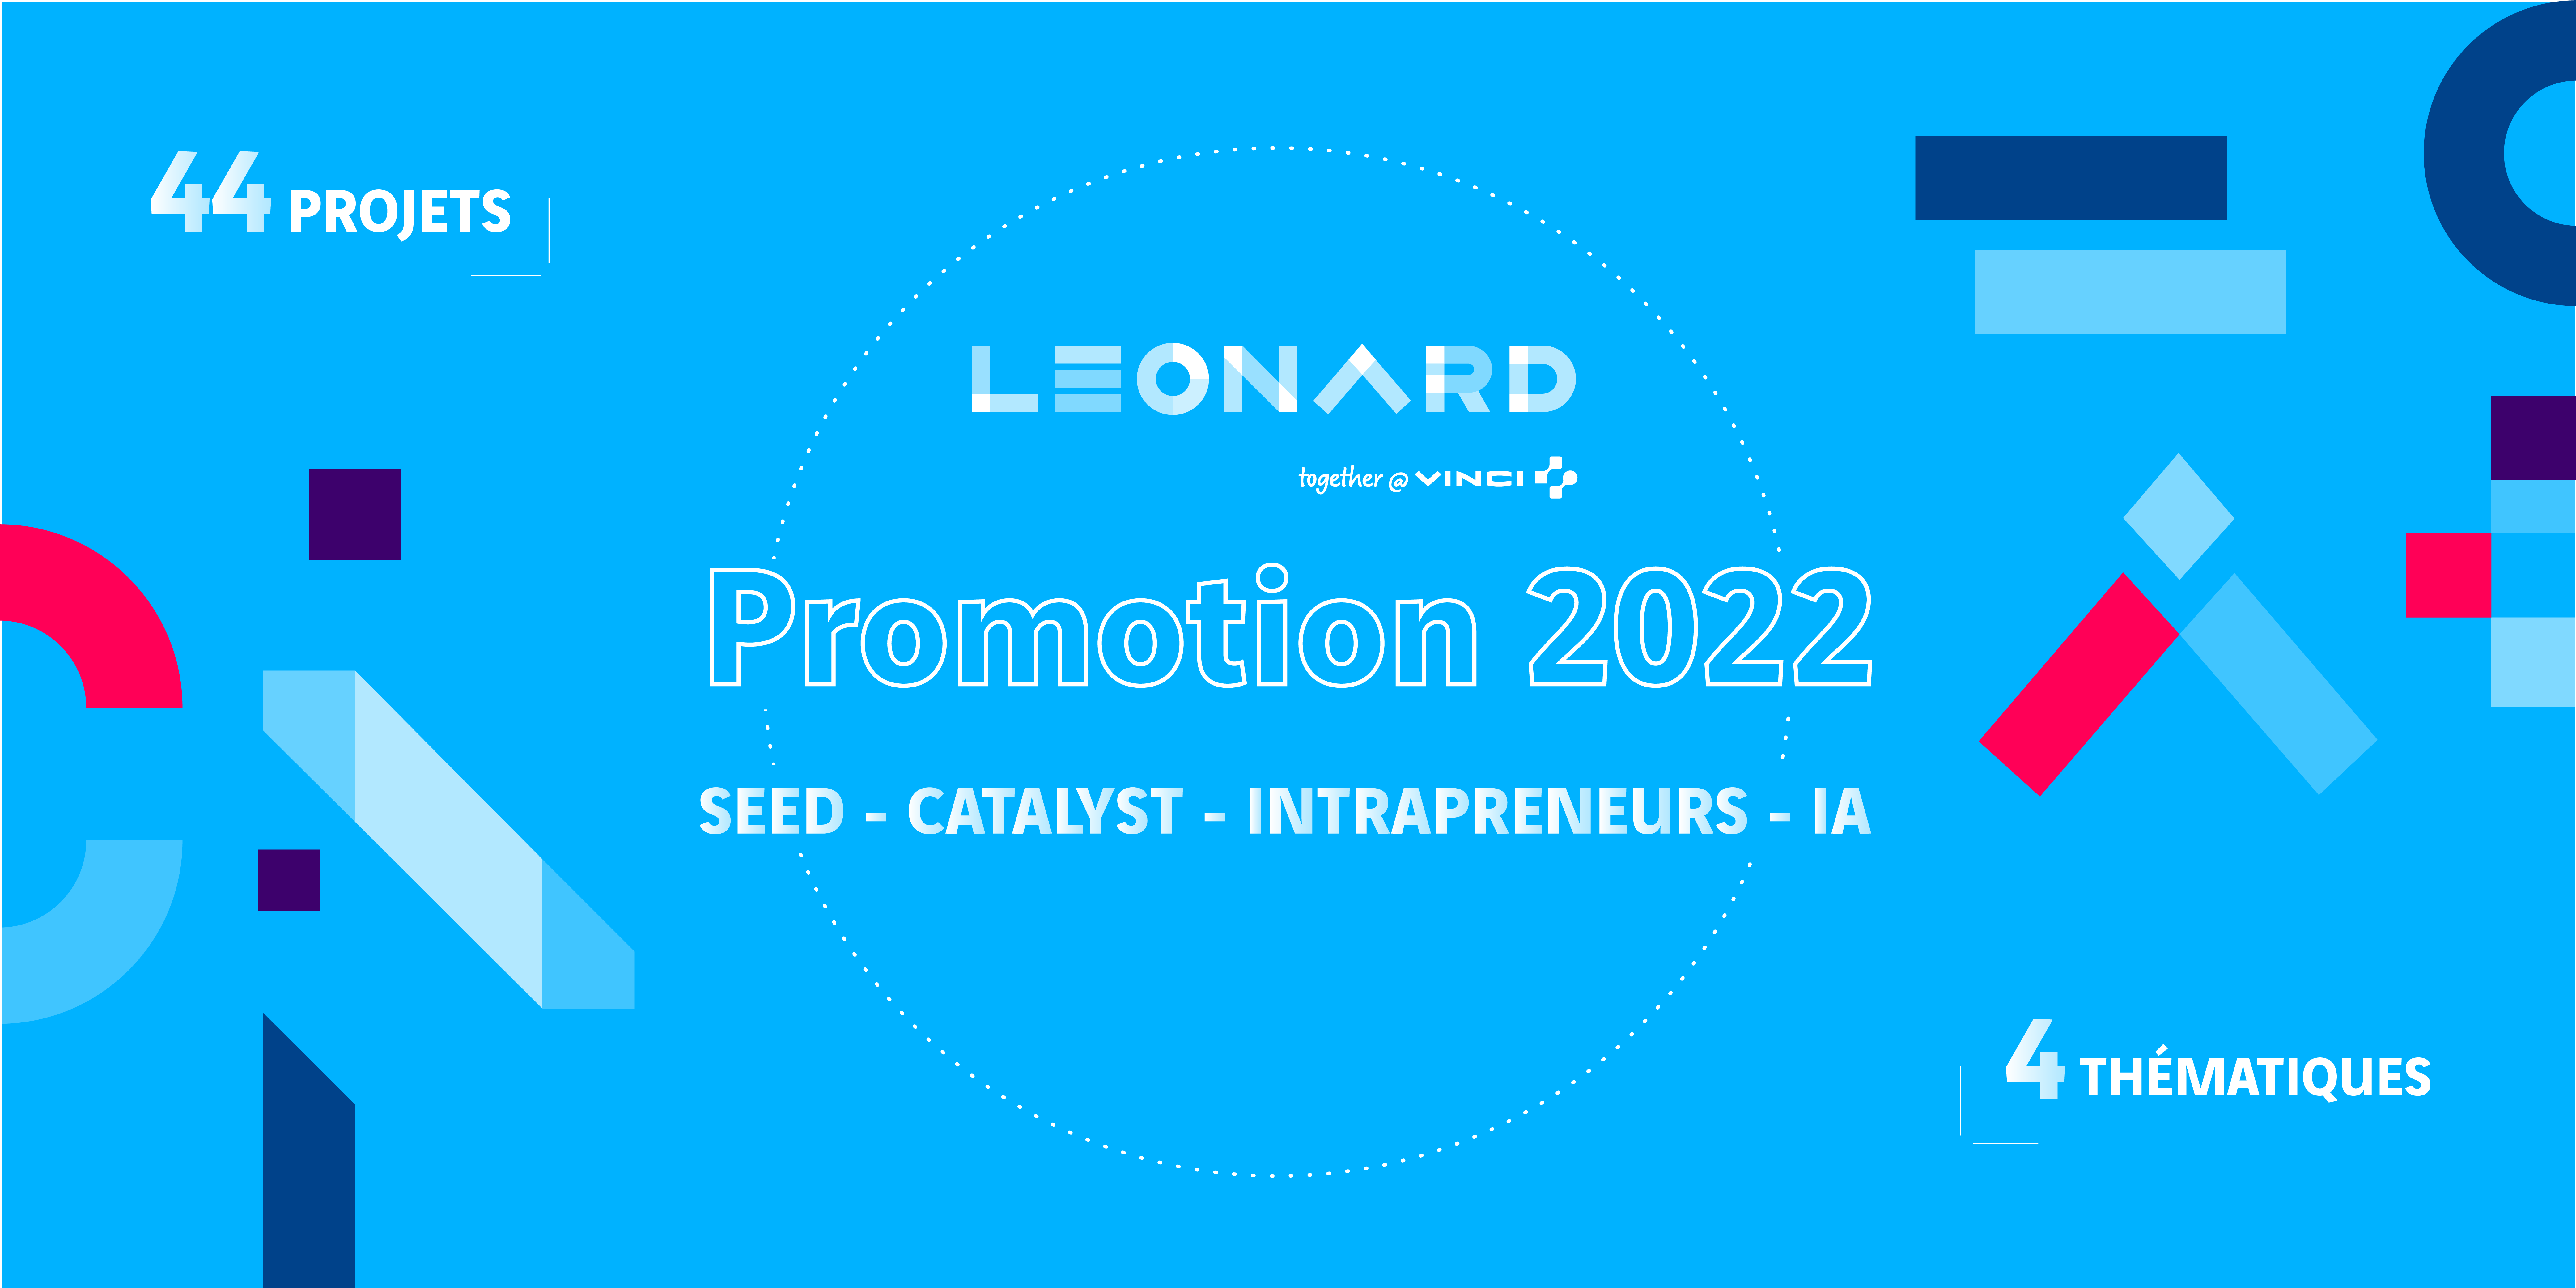 Les programmes d’accélération de Leonard accueillent 44 nouveaux projets en 2022